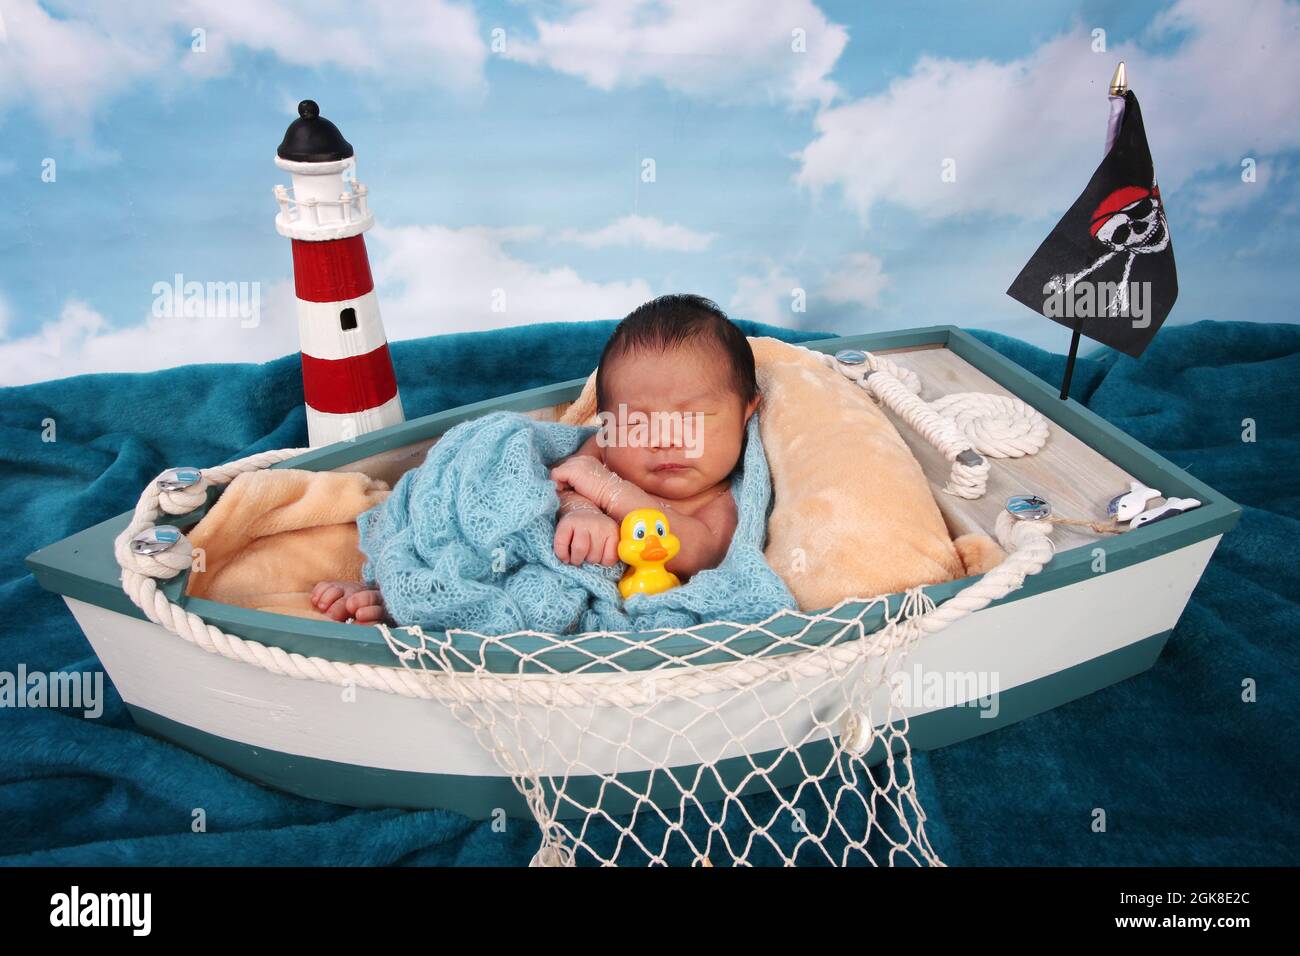 Nouveau-né garçon, Philippines enfant d'origine ethnique dans un bateau relaxant Banque D'Images